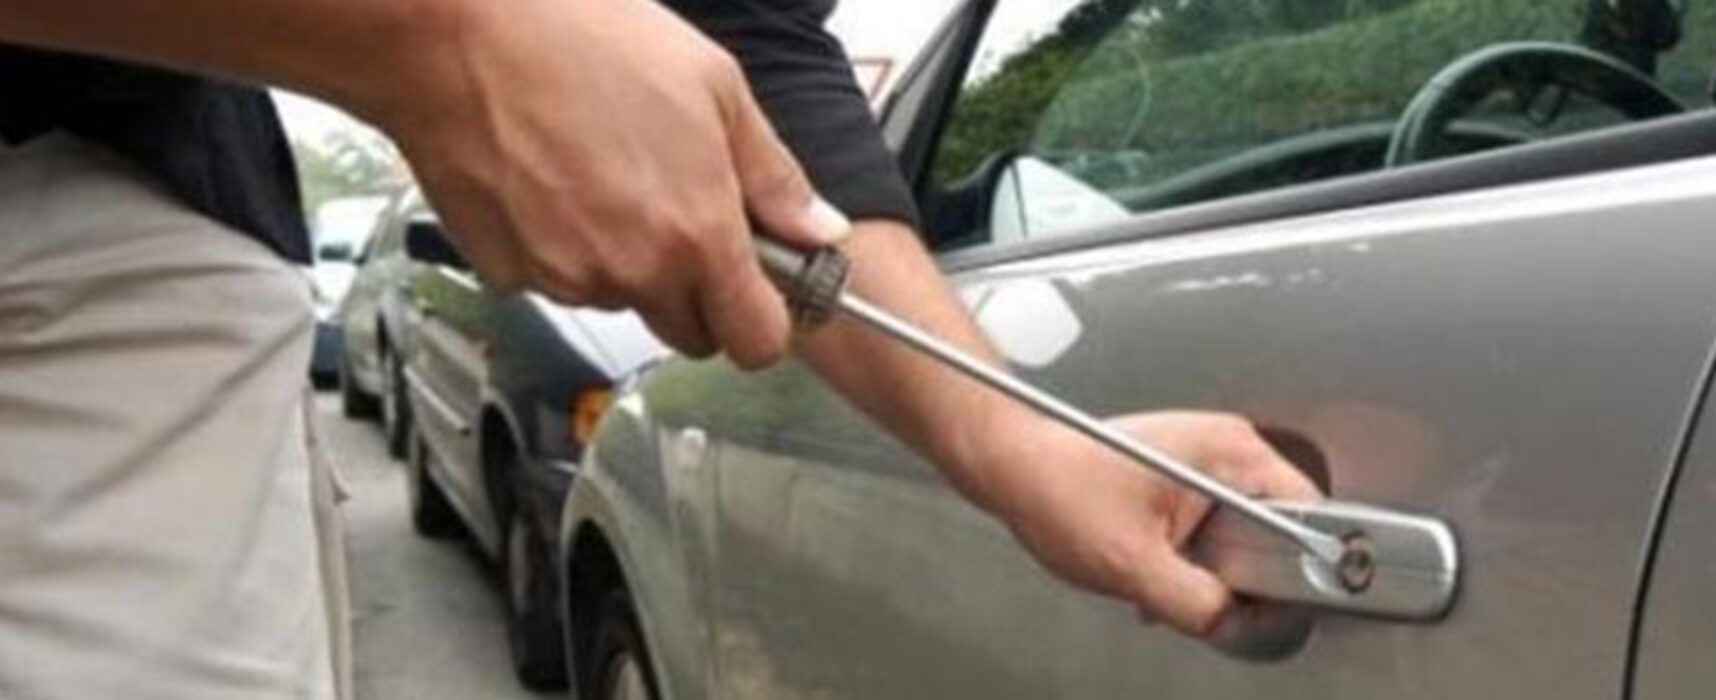 Tentativo di furto, donna biscegliese scopre ladro all’interno della sua auto